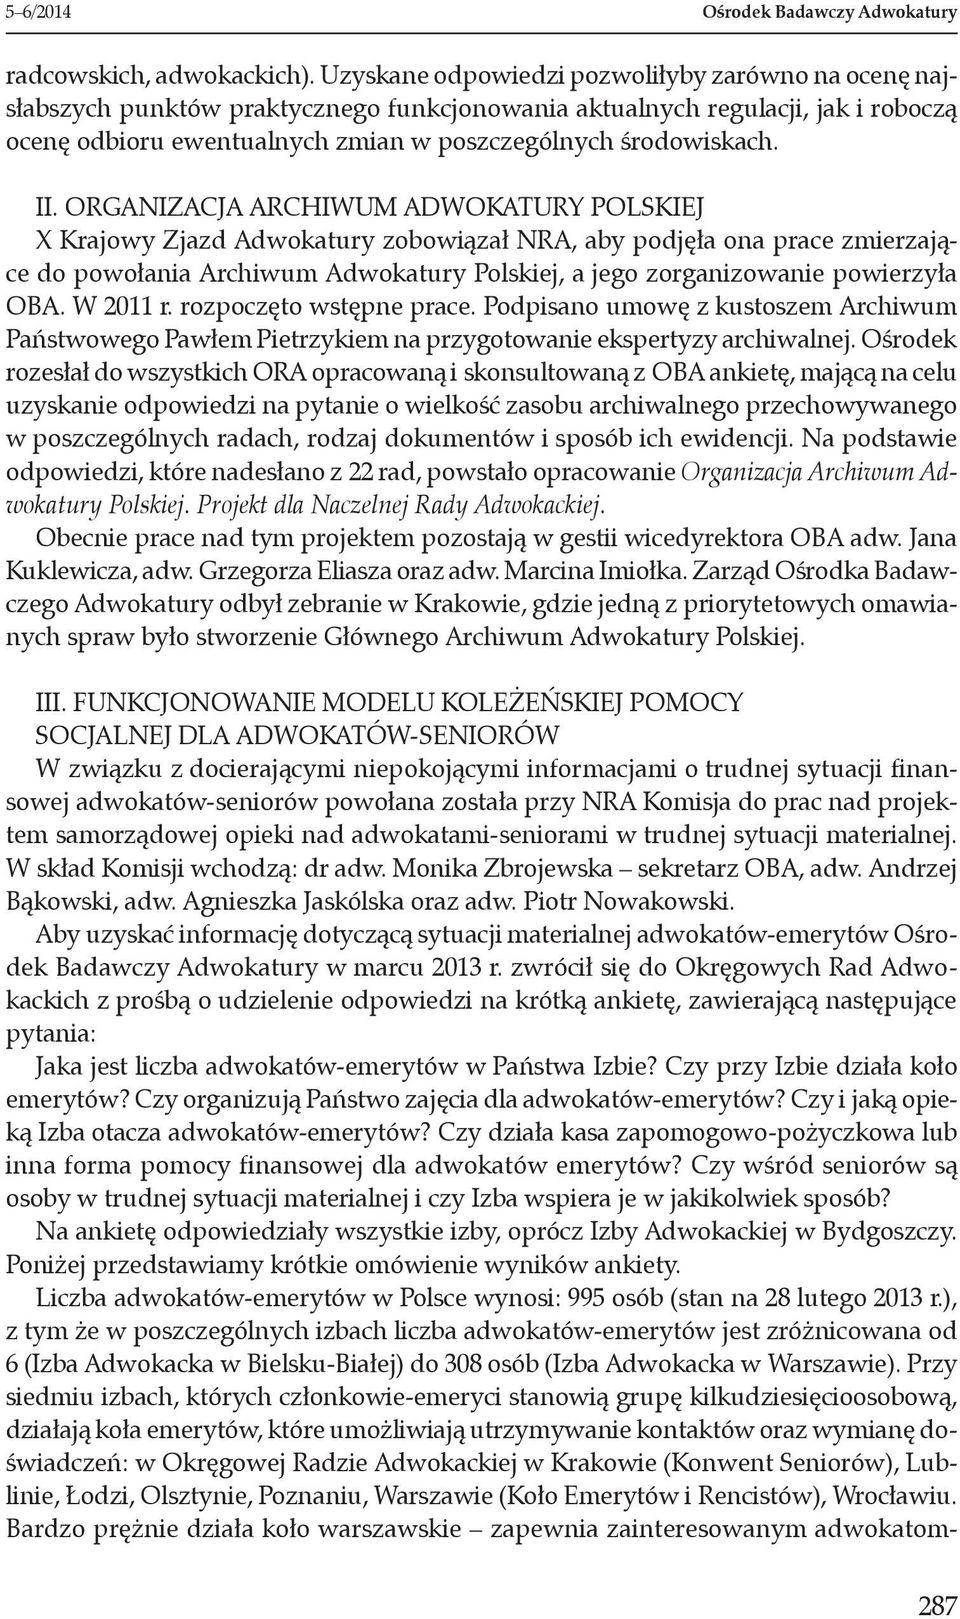 II. Organizacja Archiwum Adwokatury Polskiej X Krajowy Zjazd Adwokatury zobowiązał NRA, aby podjęła ona prace zmierzające do powołania Archiwum Adwokatury Polskiej, a jego zorganizowanie powierzyła